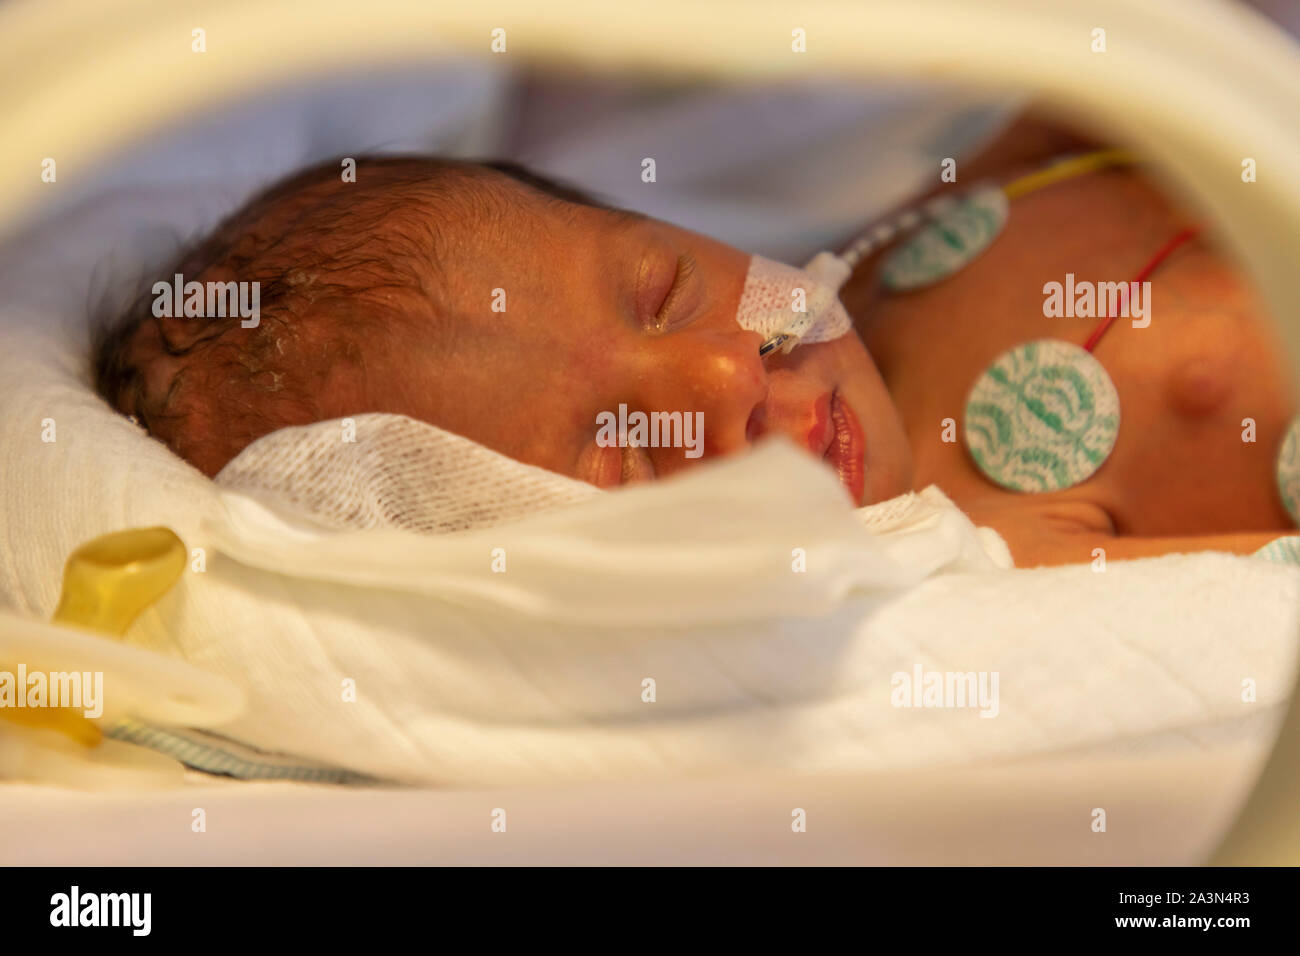 Nascita prematura ward in un ospedale, un reparto di neonatologia, neonati prematuri in un incubatore, Foto Stock